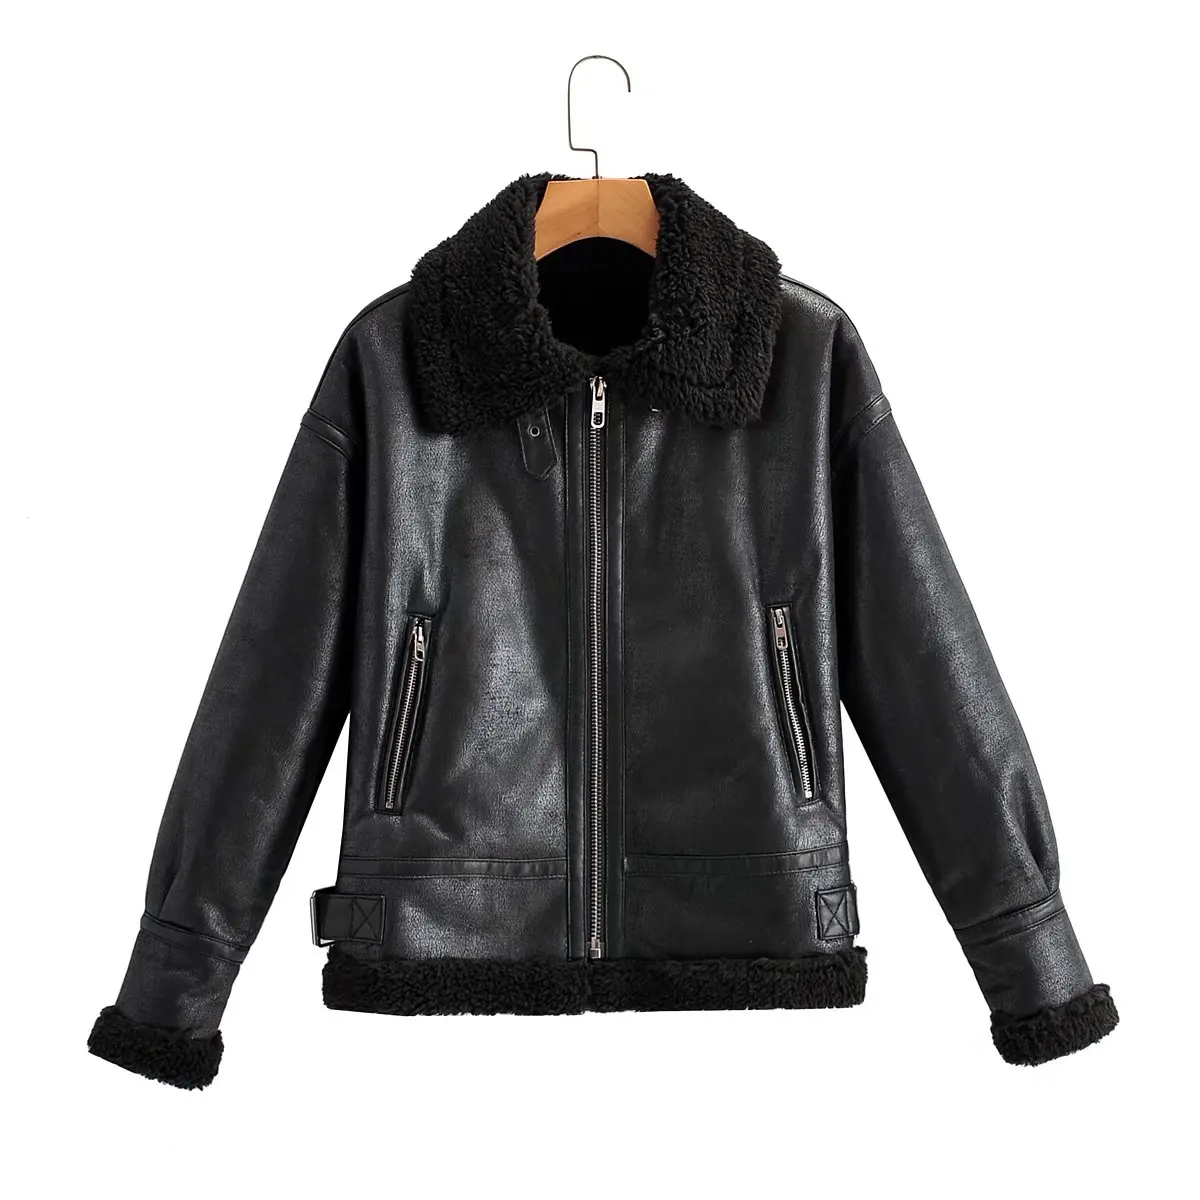 Fur Sheepskin Jackets Cofffee Coats Streetwear Thick Faux Leather Winter 2021 Fashion Women Lady Motorcycle Biker Warm Black enlarge